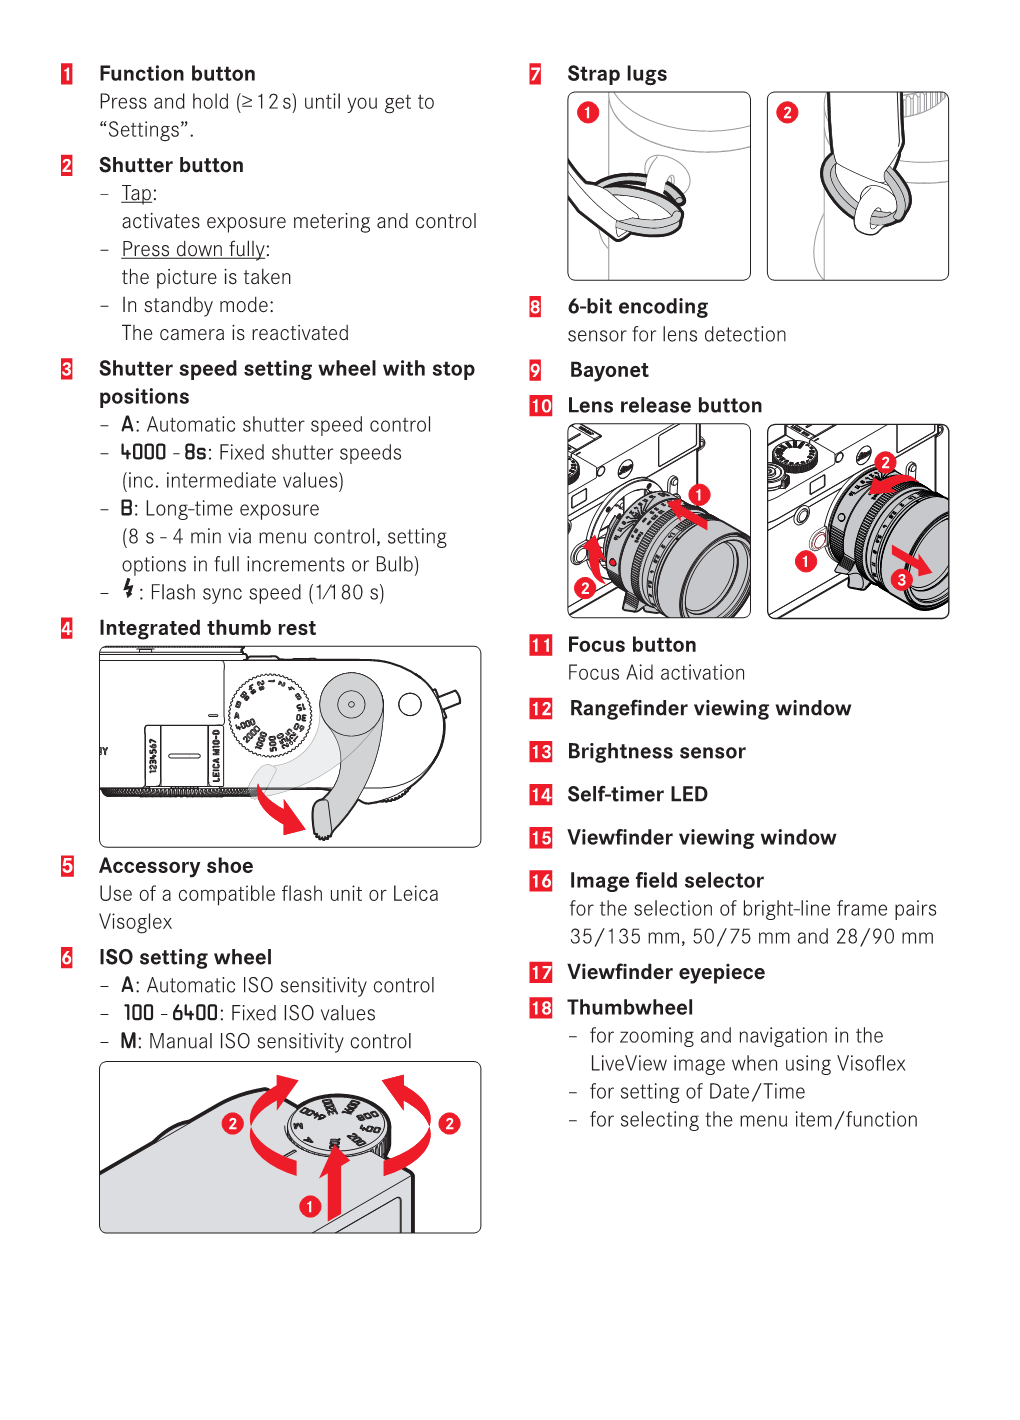 Leica M10-D Quick Start Guide